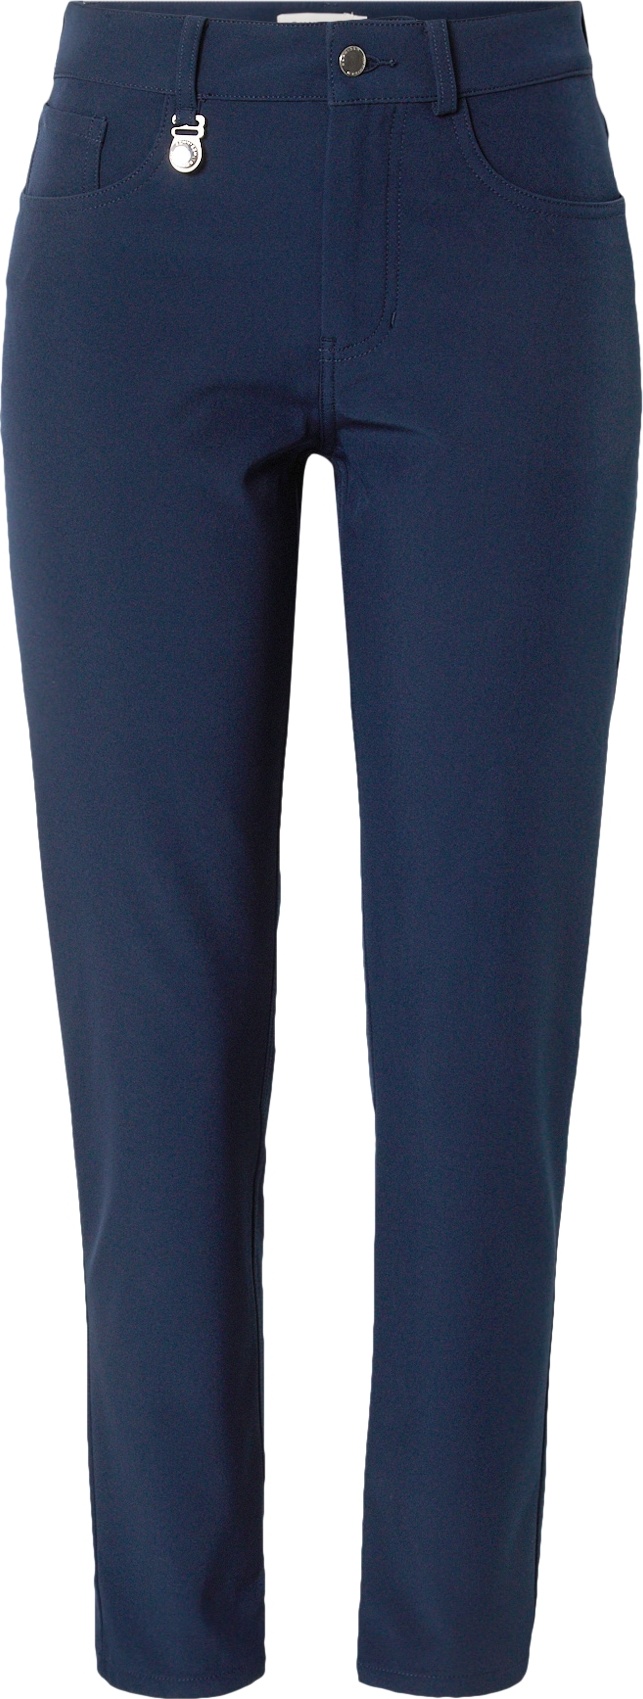 Röhnisch Sportovní kalhoty 'Insulate' marine modrá